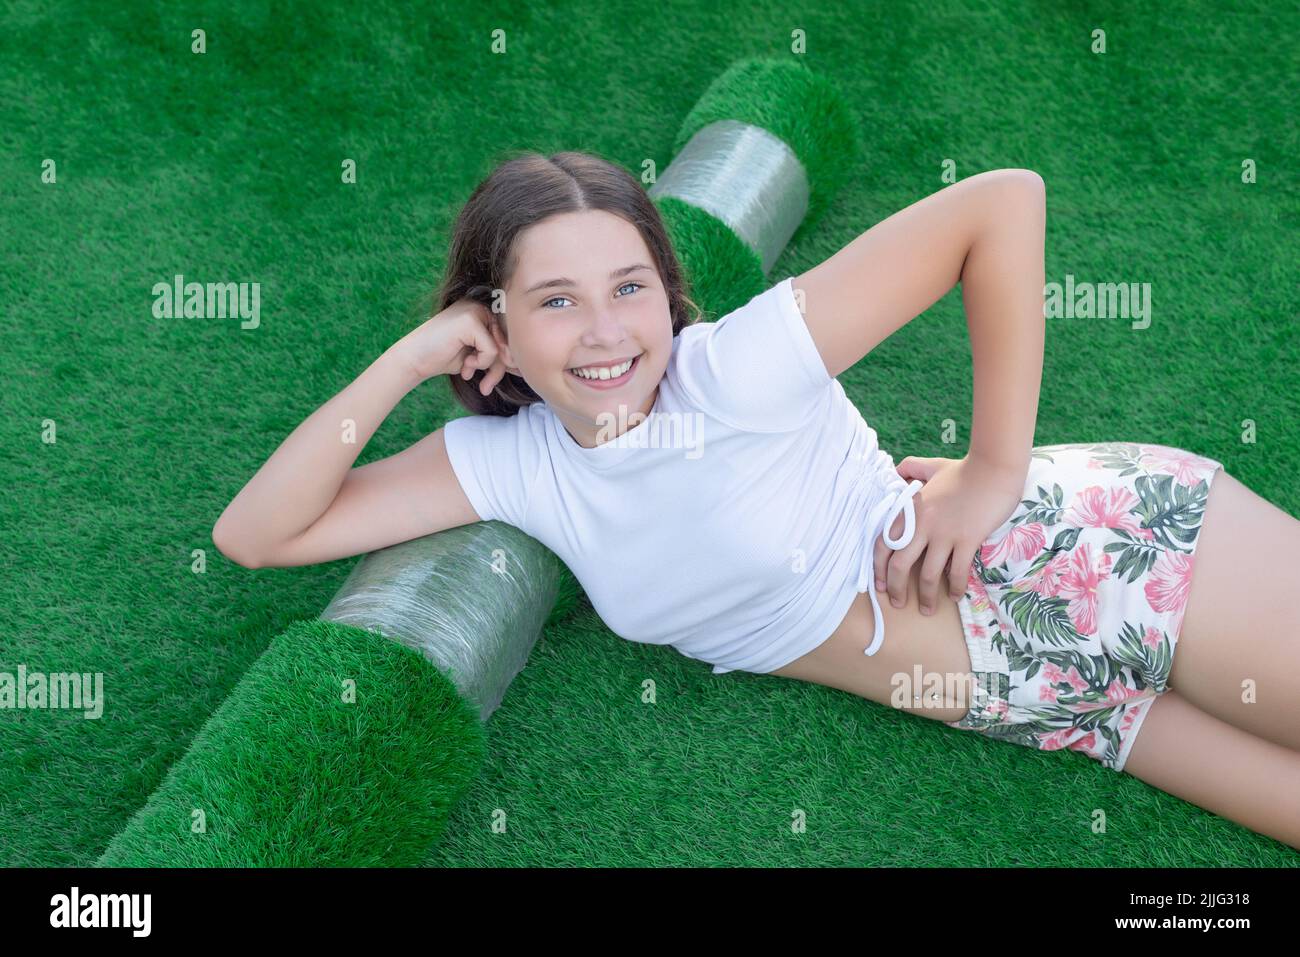 Jeune fille caucasienne souriante couché sur un nouveau rouleau de gazon artificiel. Herbe artificielle agréable prête à pondre Banque D'Images